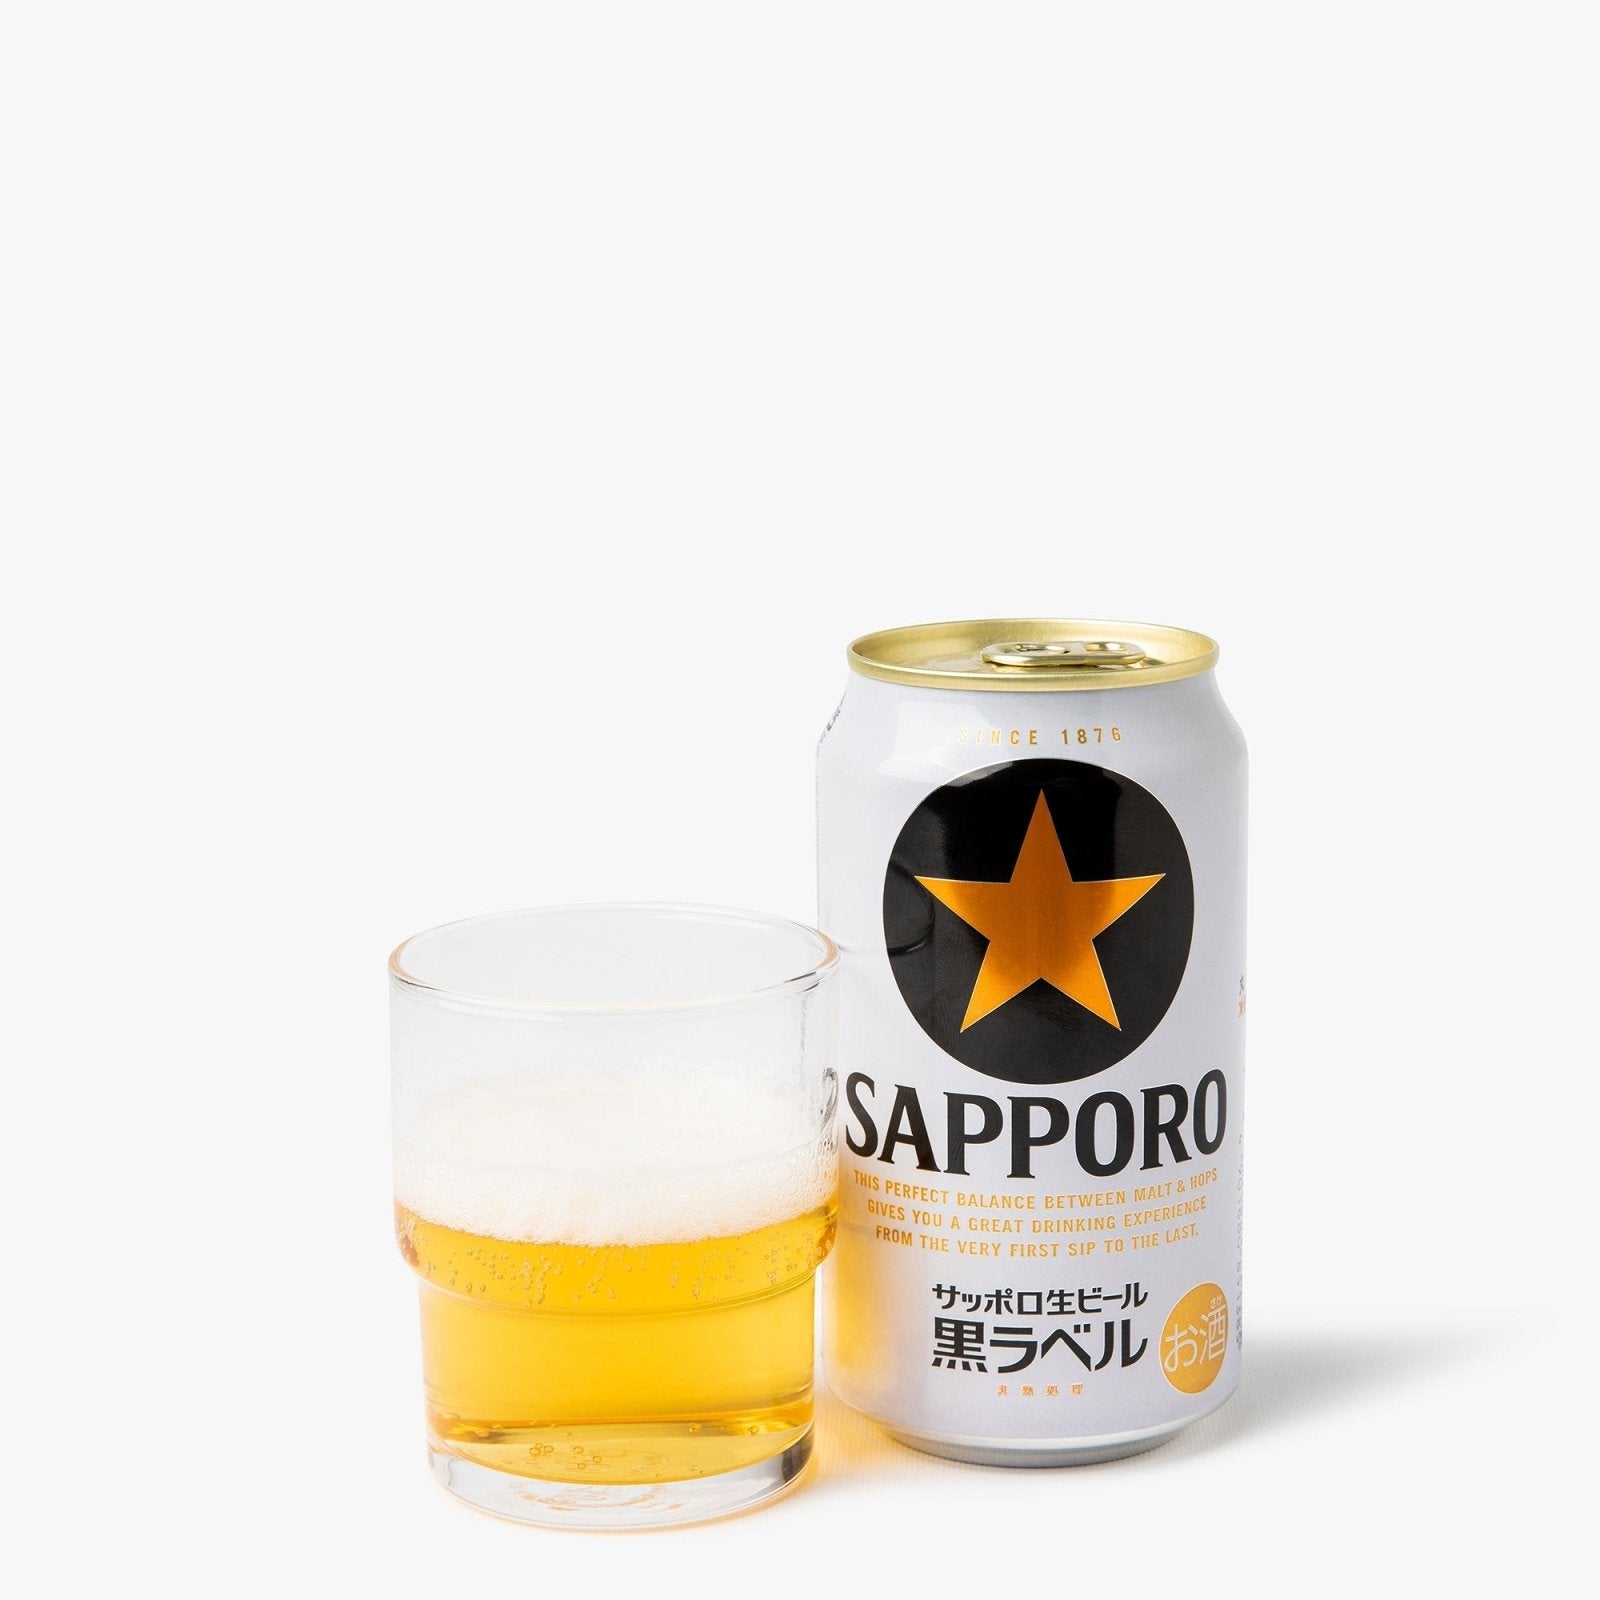 Bière sapporo black label - 350ml - 5° - Sapporo - iRASSHAi